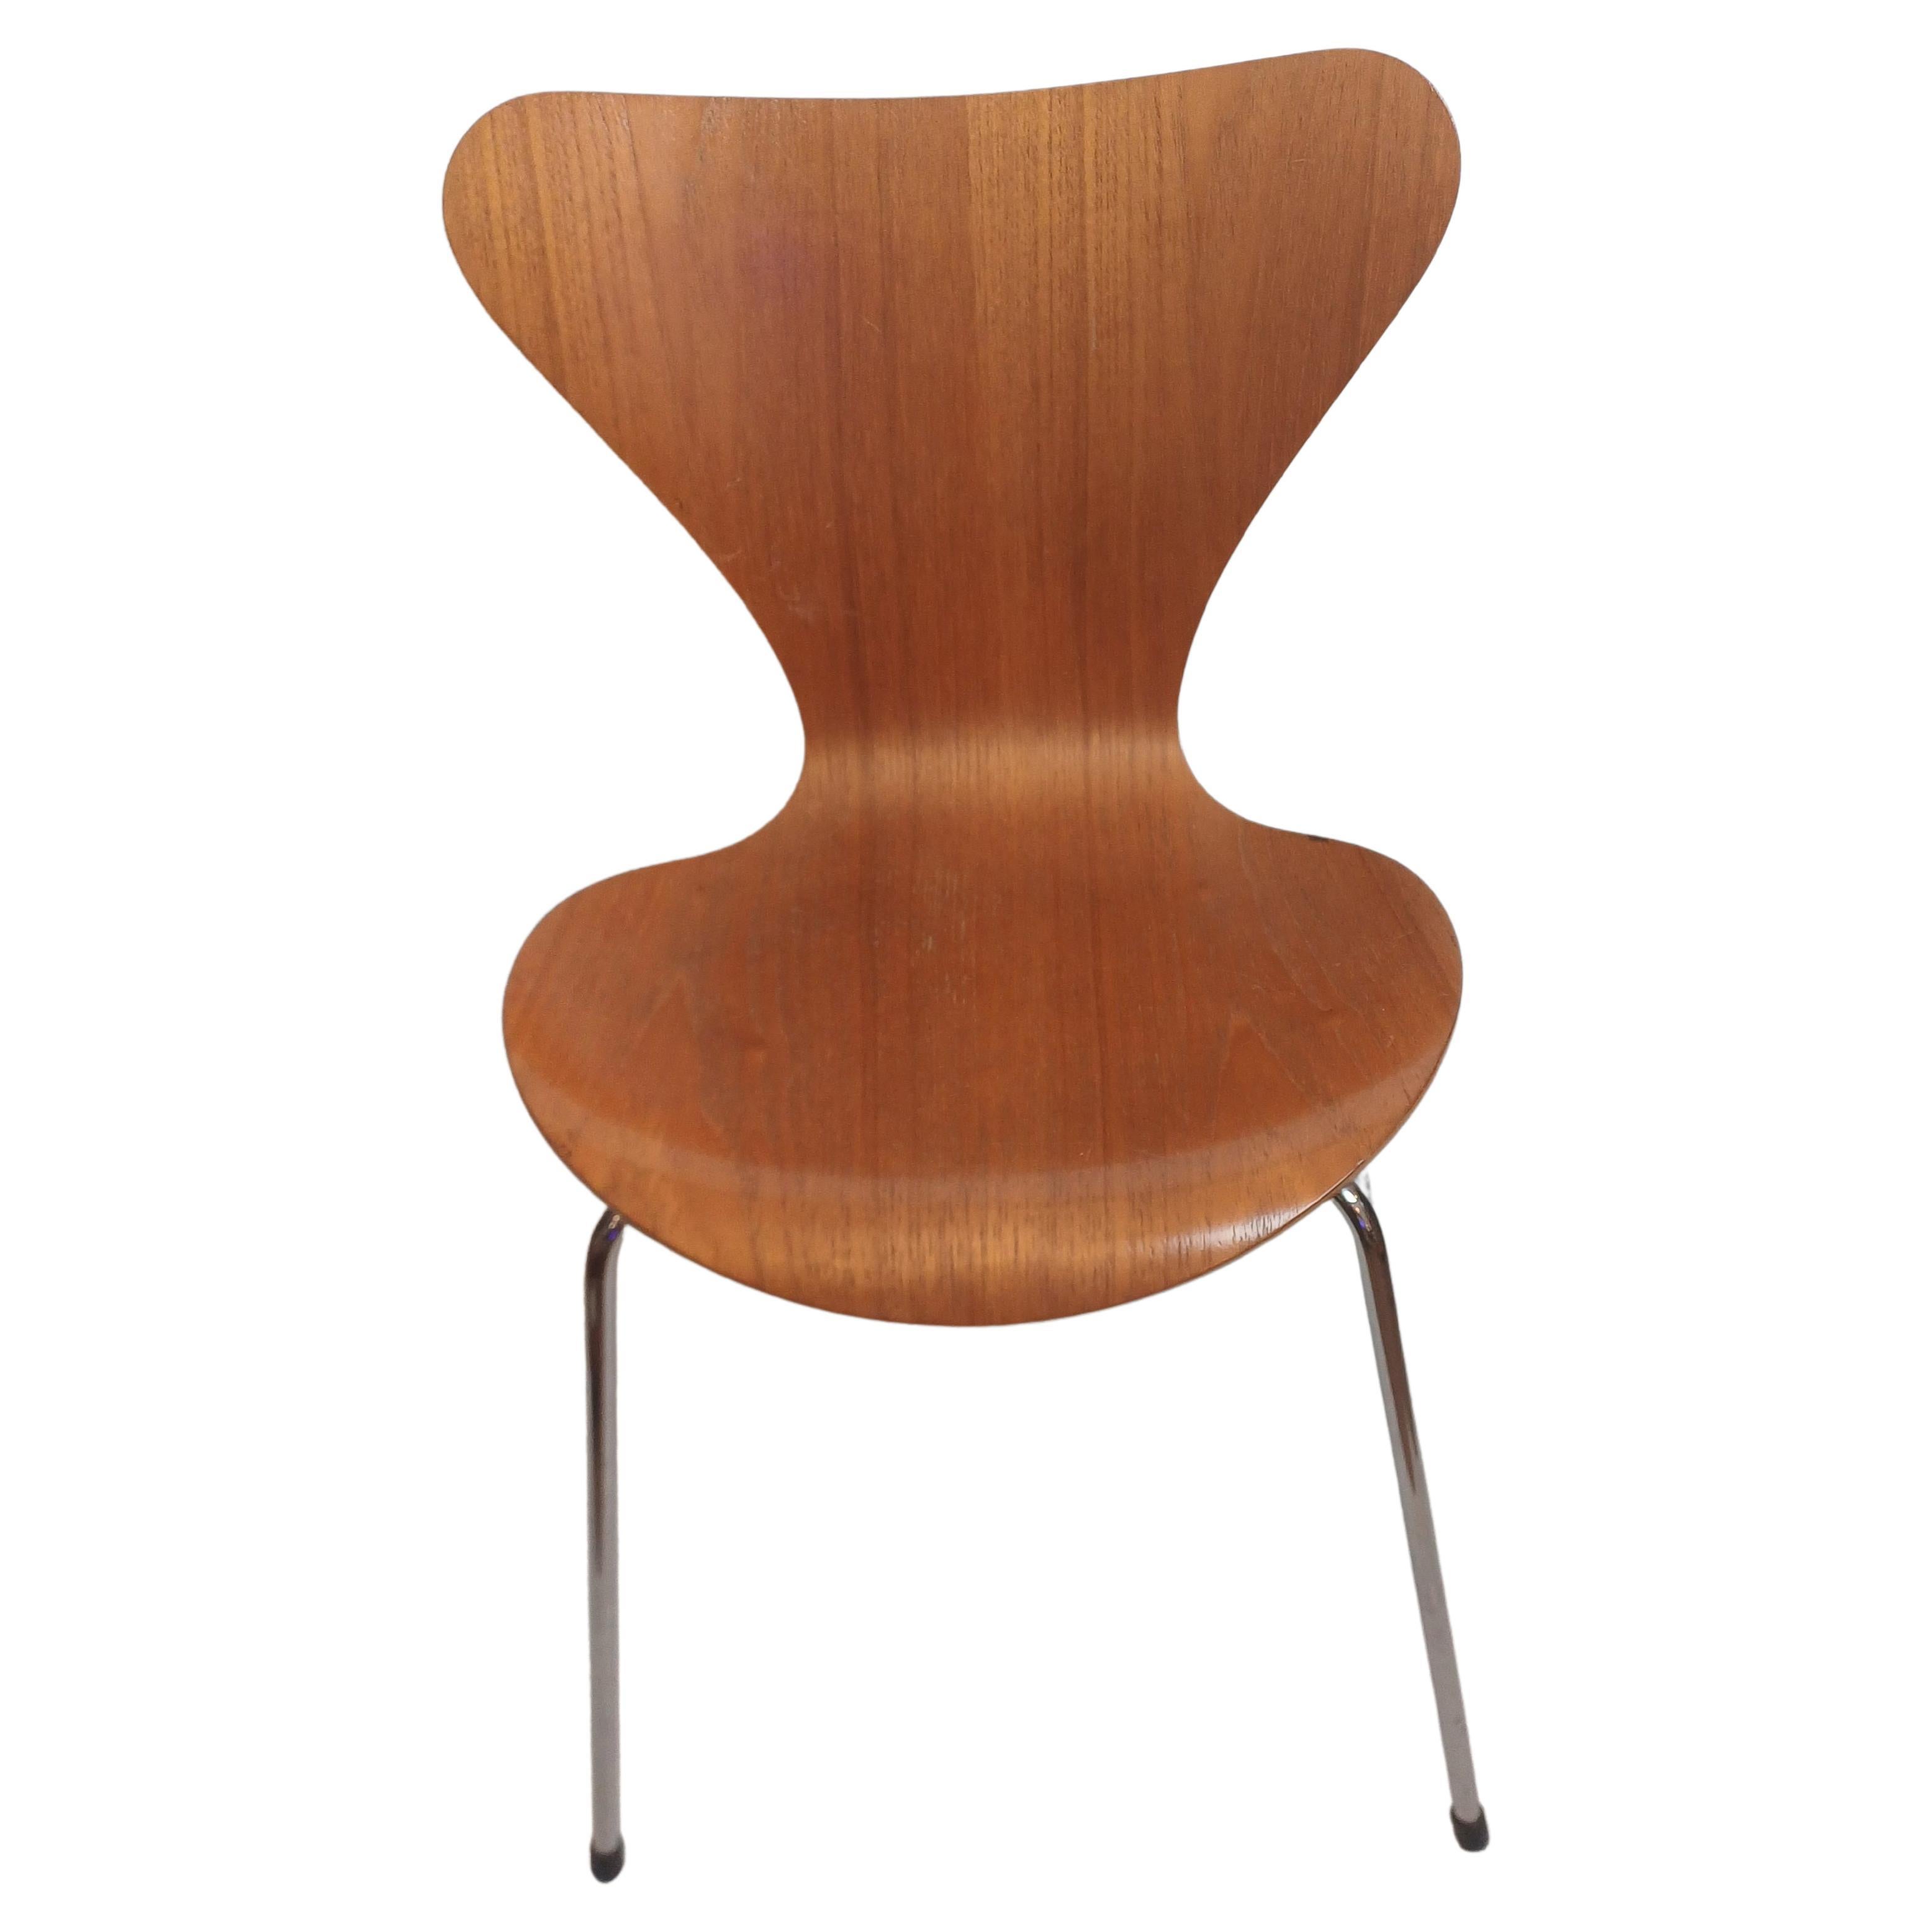 Stuhl Nr. 1 SERIE 7, 1955 von Arne Jacobsen entworfen und 1992 in Dänemark von Fritz Hansen hergestellt (mit Etikett). Gestell aus gebogenem, furniertem Sperrholz, Beine aus verchromtem Stahl. In gutem Zustand, mit einigen kleinen Gebrauchsspuren,